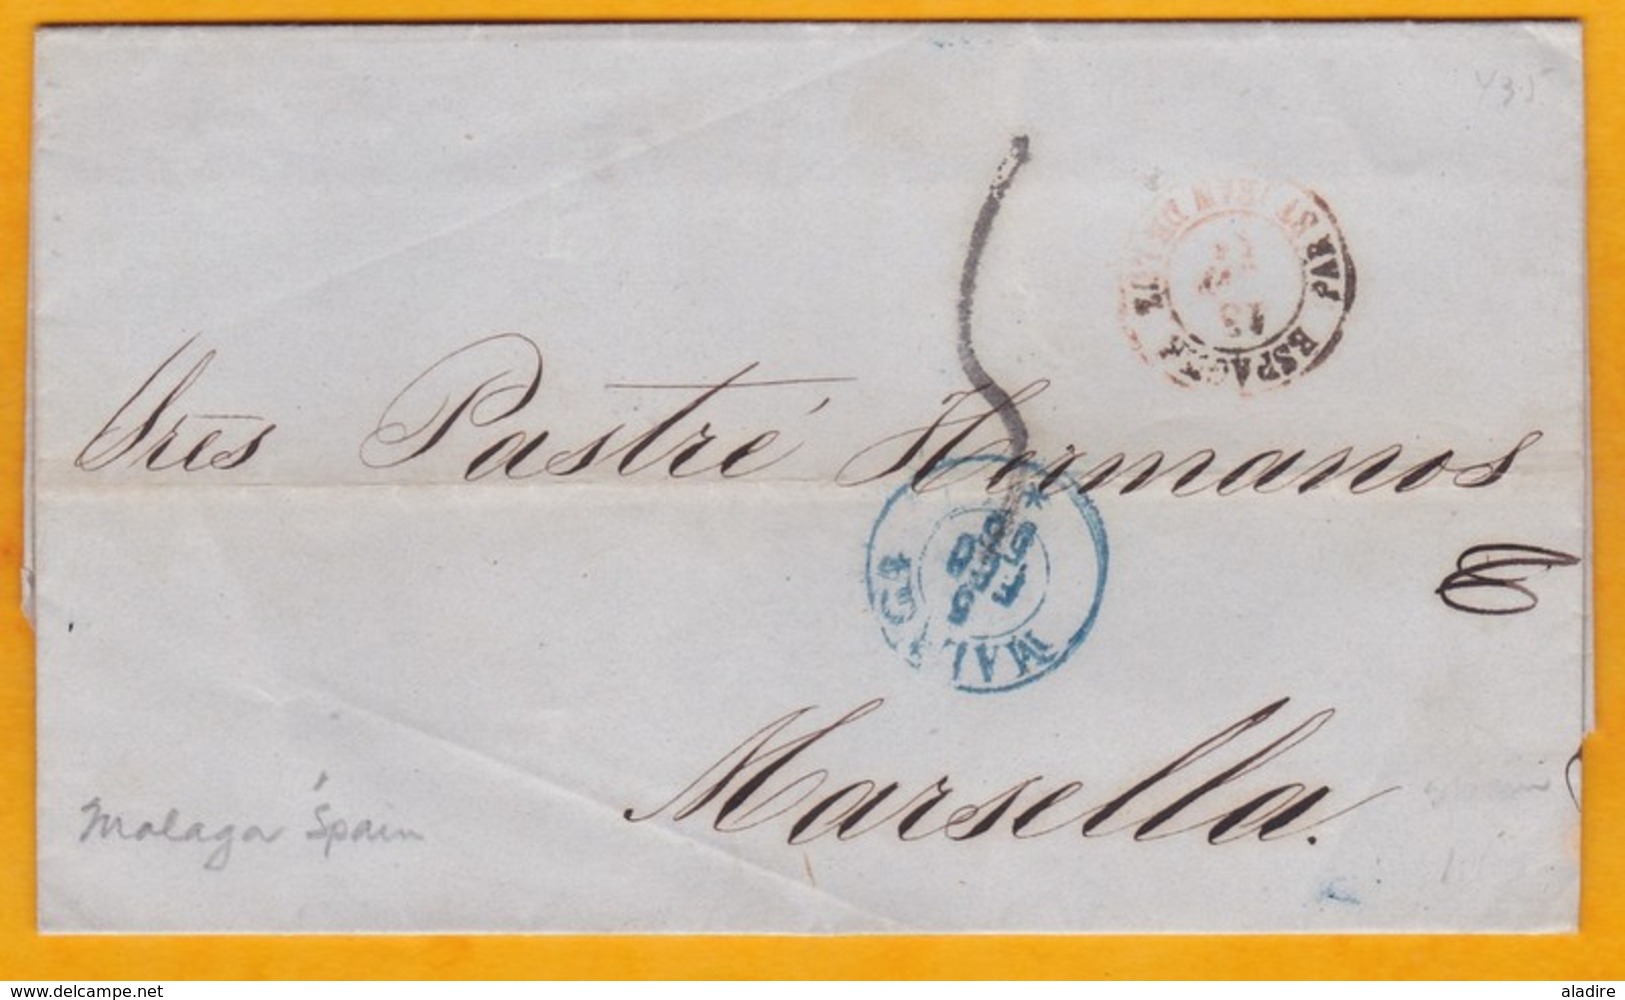 1856 - Lettre Avec Correspondance De Malaga, Espagne Vers Marseille, France - Cad Entrée En France - 4 Scans - Lettres & Documents